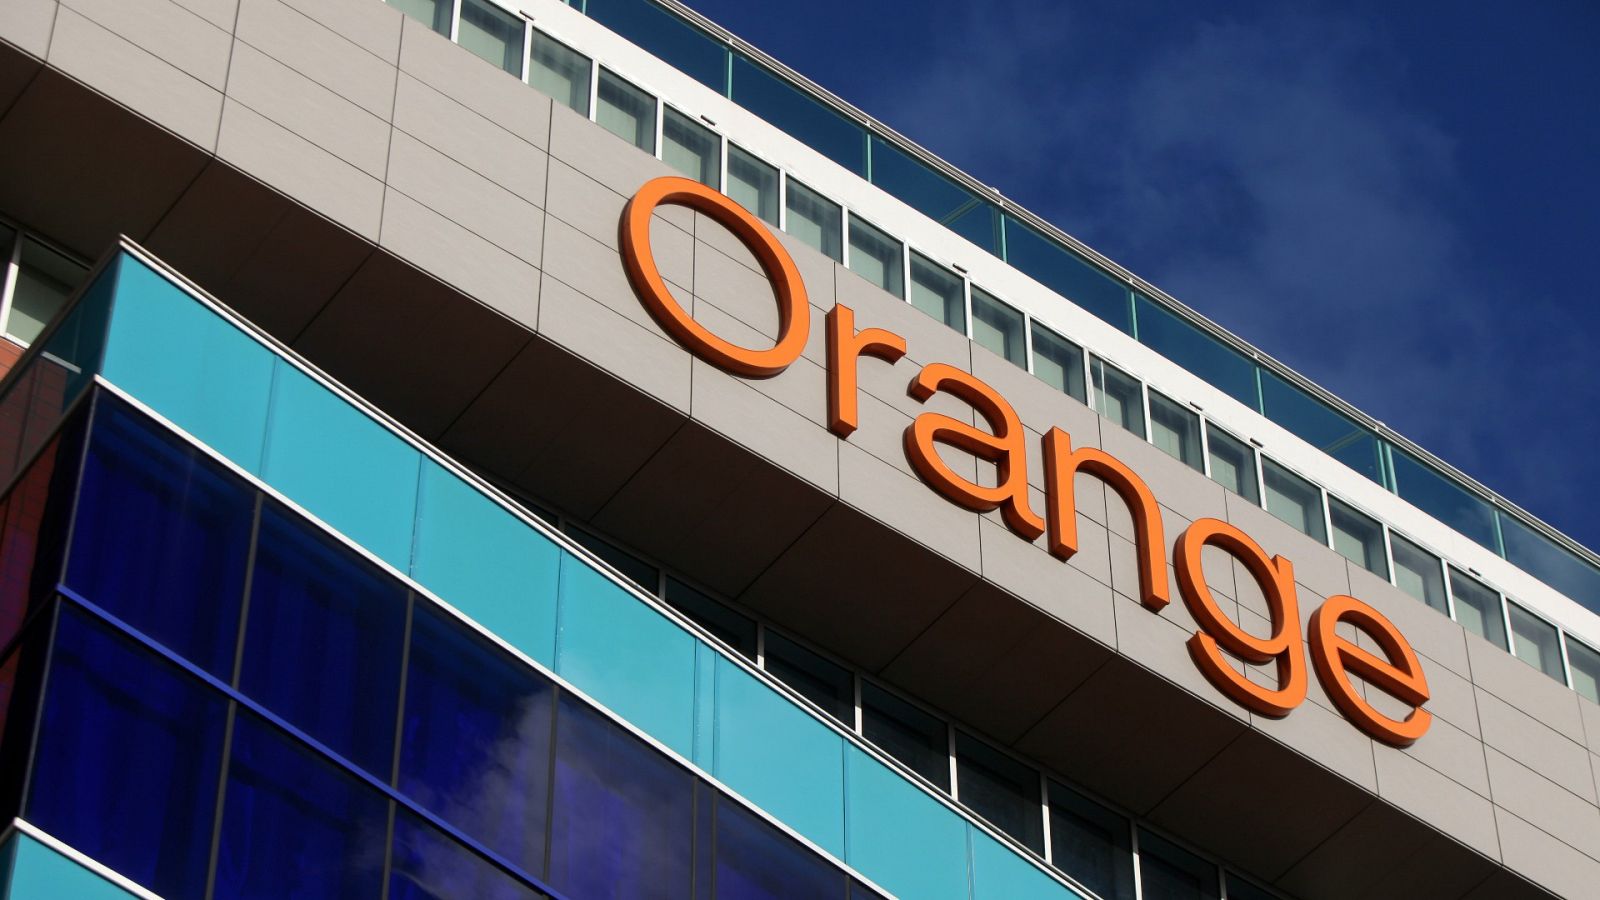 Detalle del logo de Orange